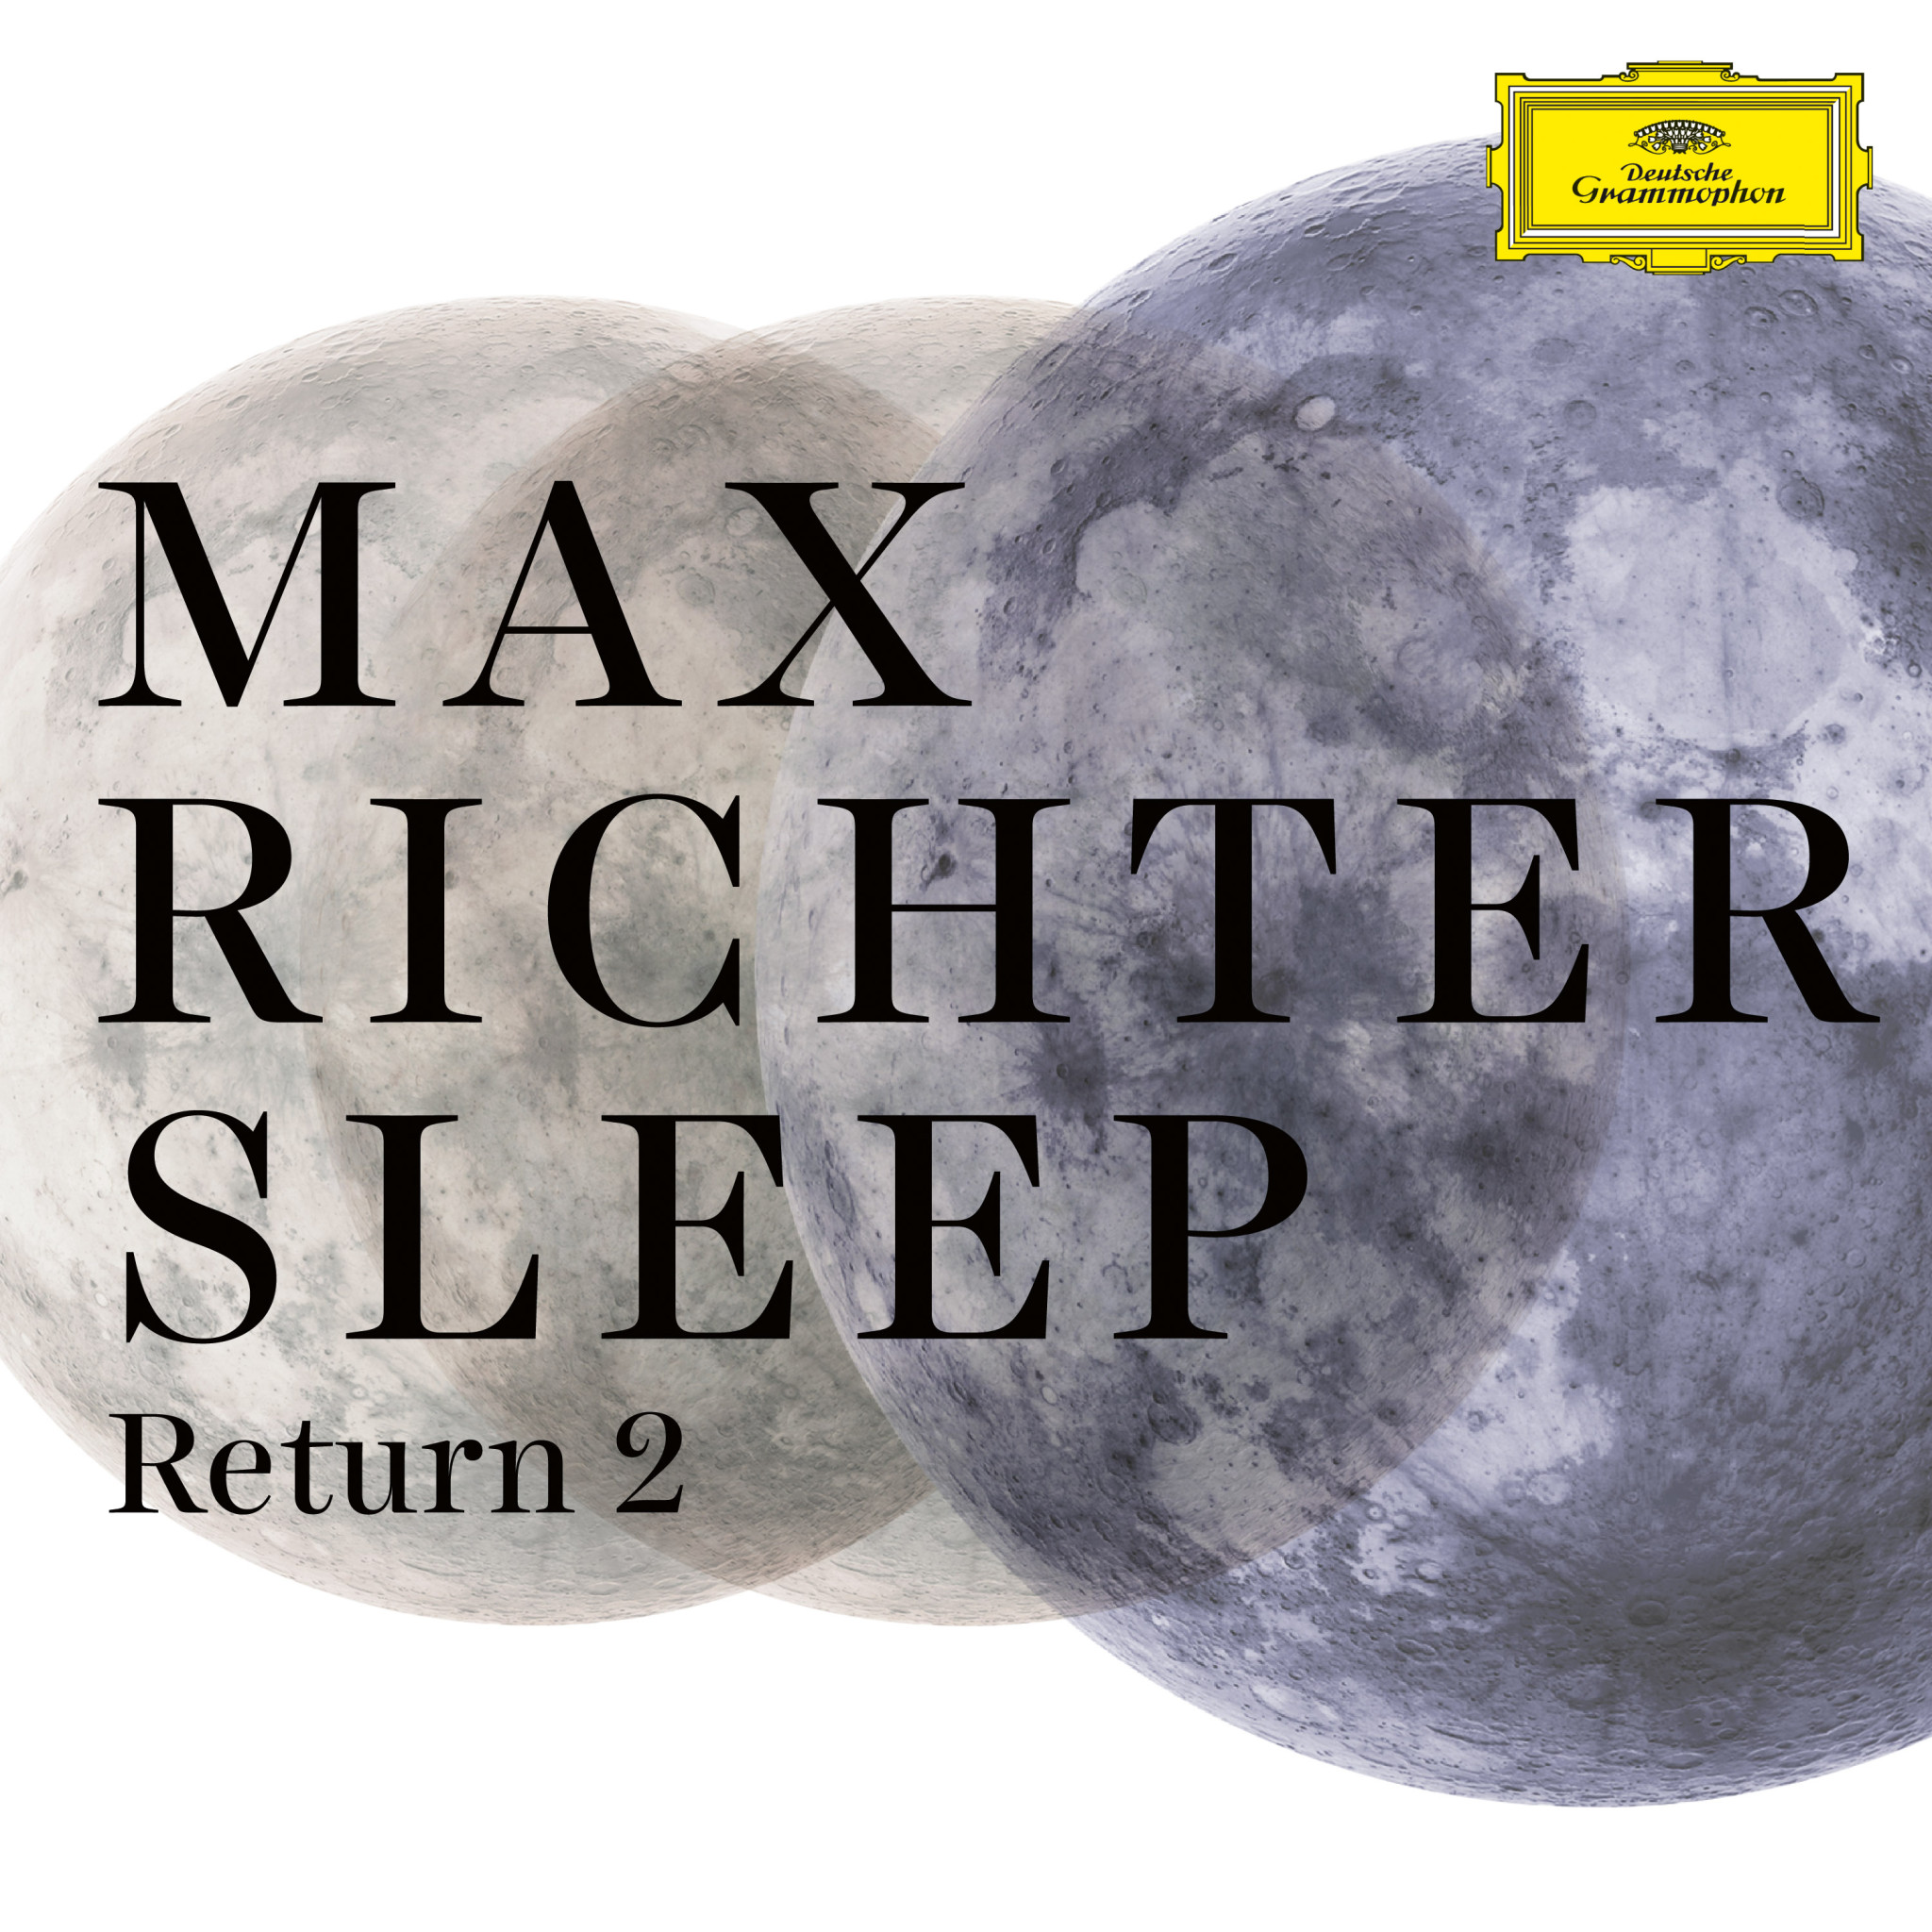 Max Richter - Return 2